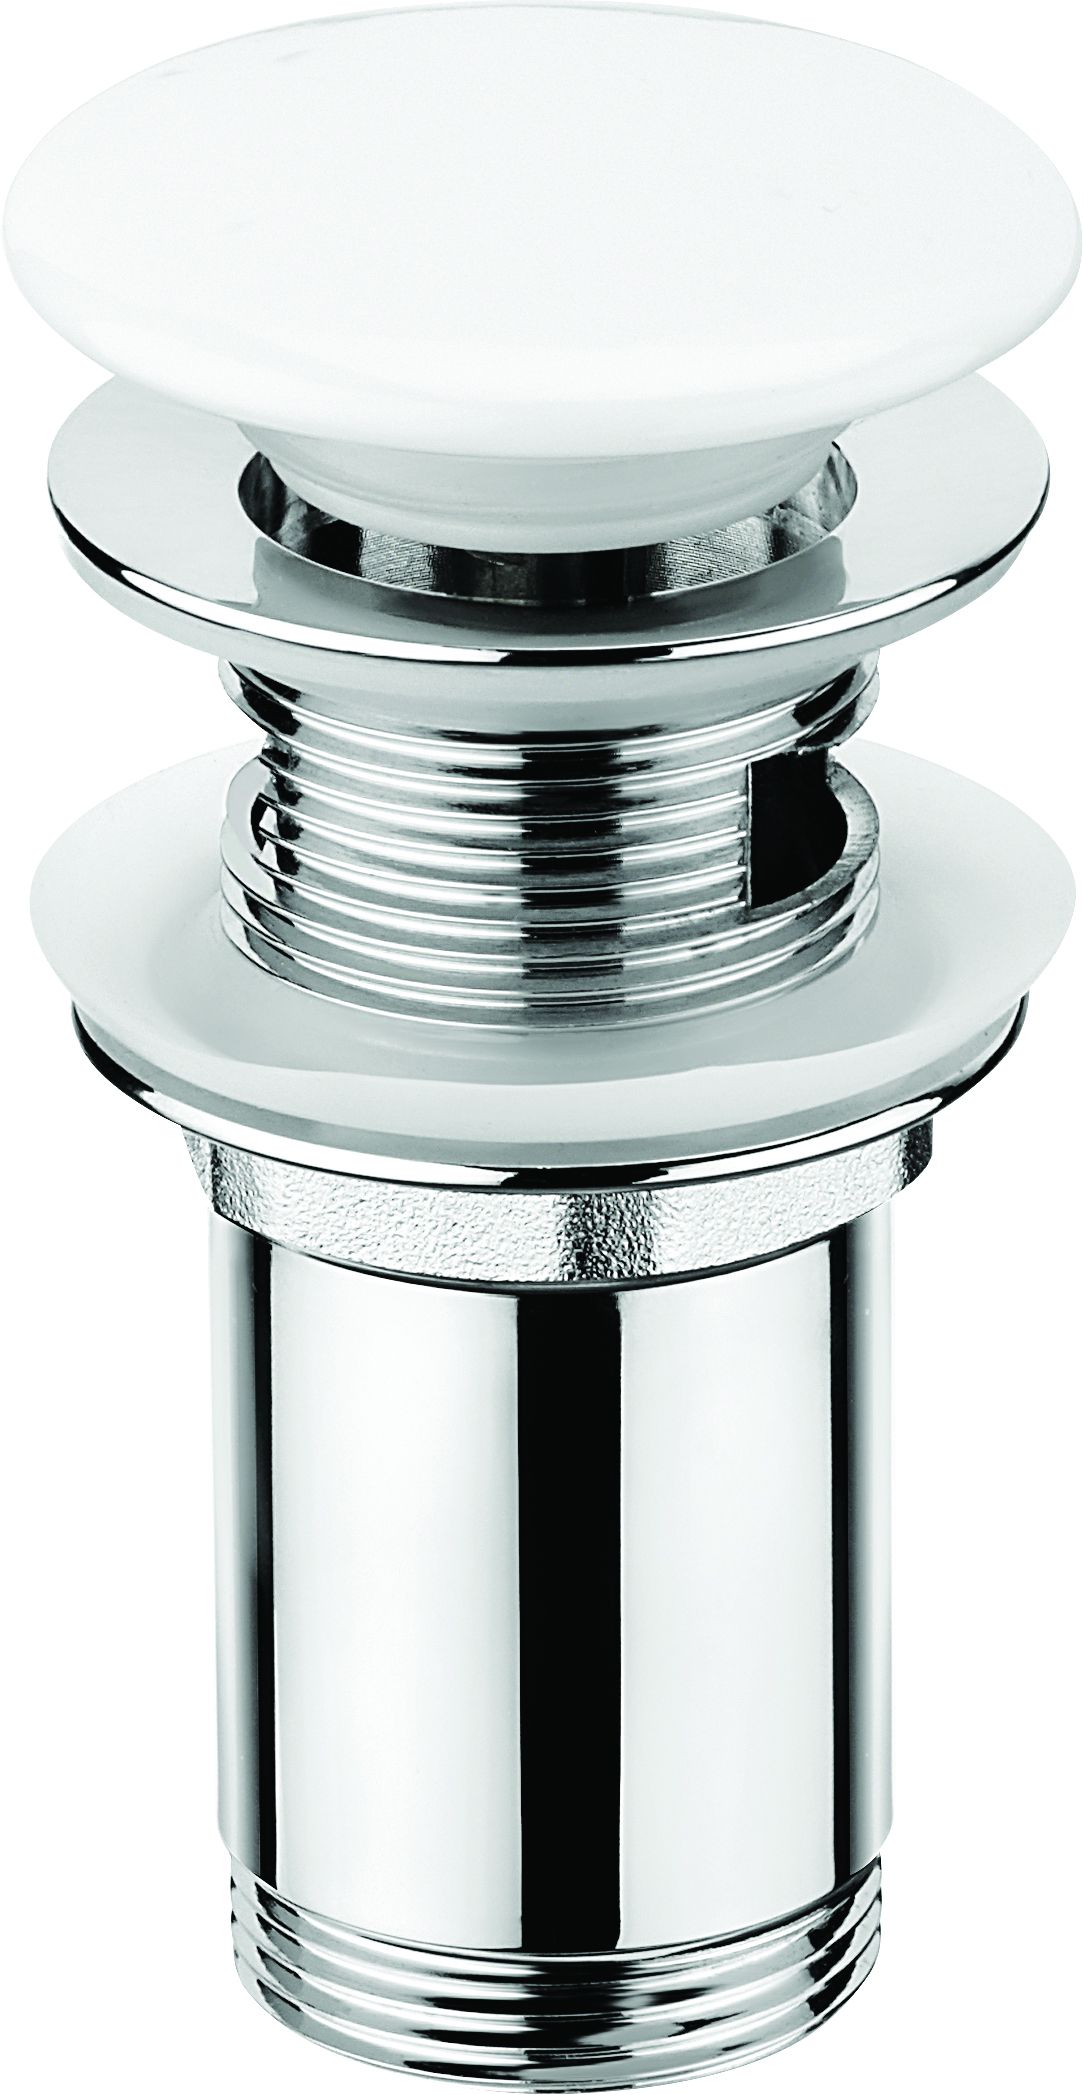 Plug for sink, or bidet, with metal sleeve - ceramic - NHC_C10U - Główne zdjęcie produktowe